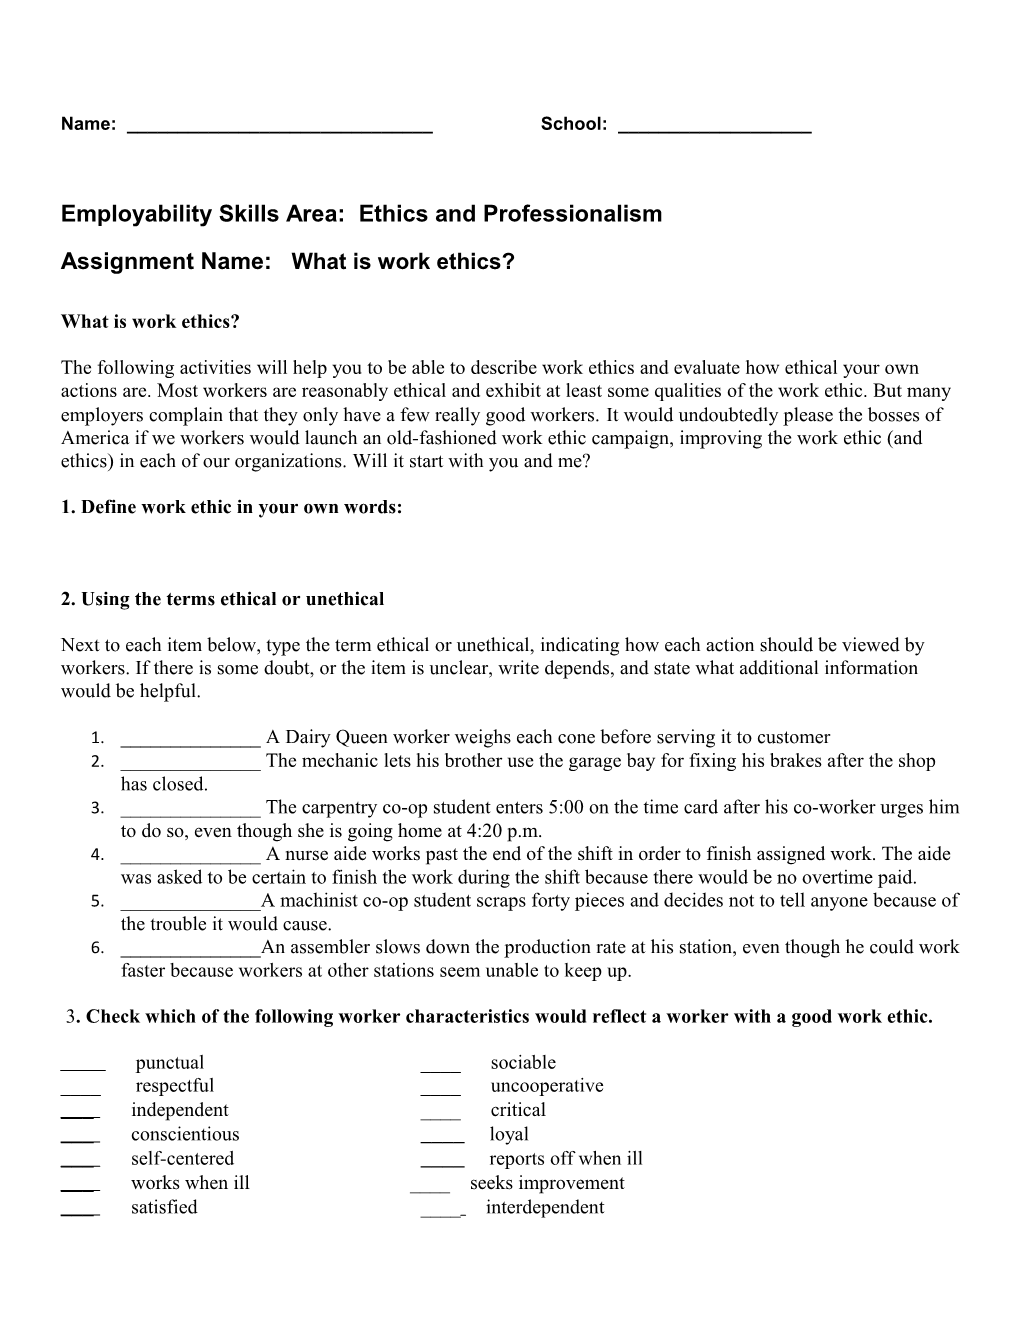 Employability Skills Area: Ethics and Professionalism